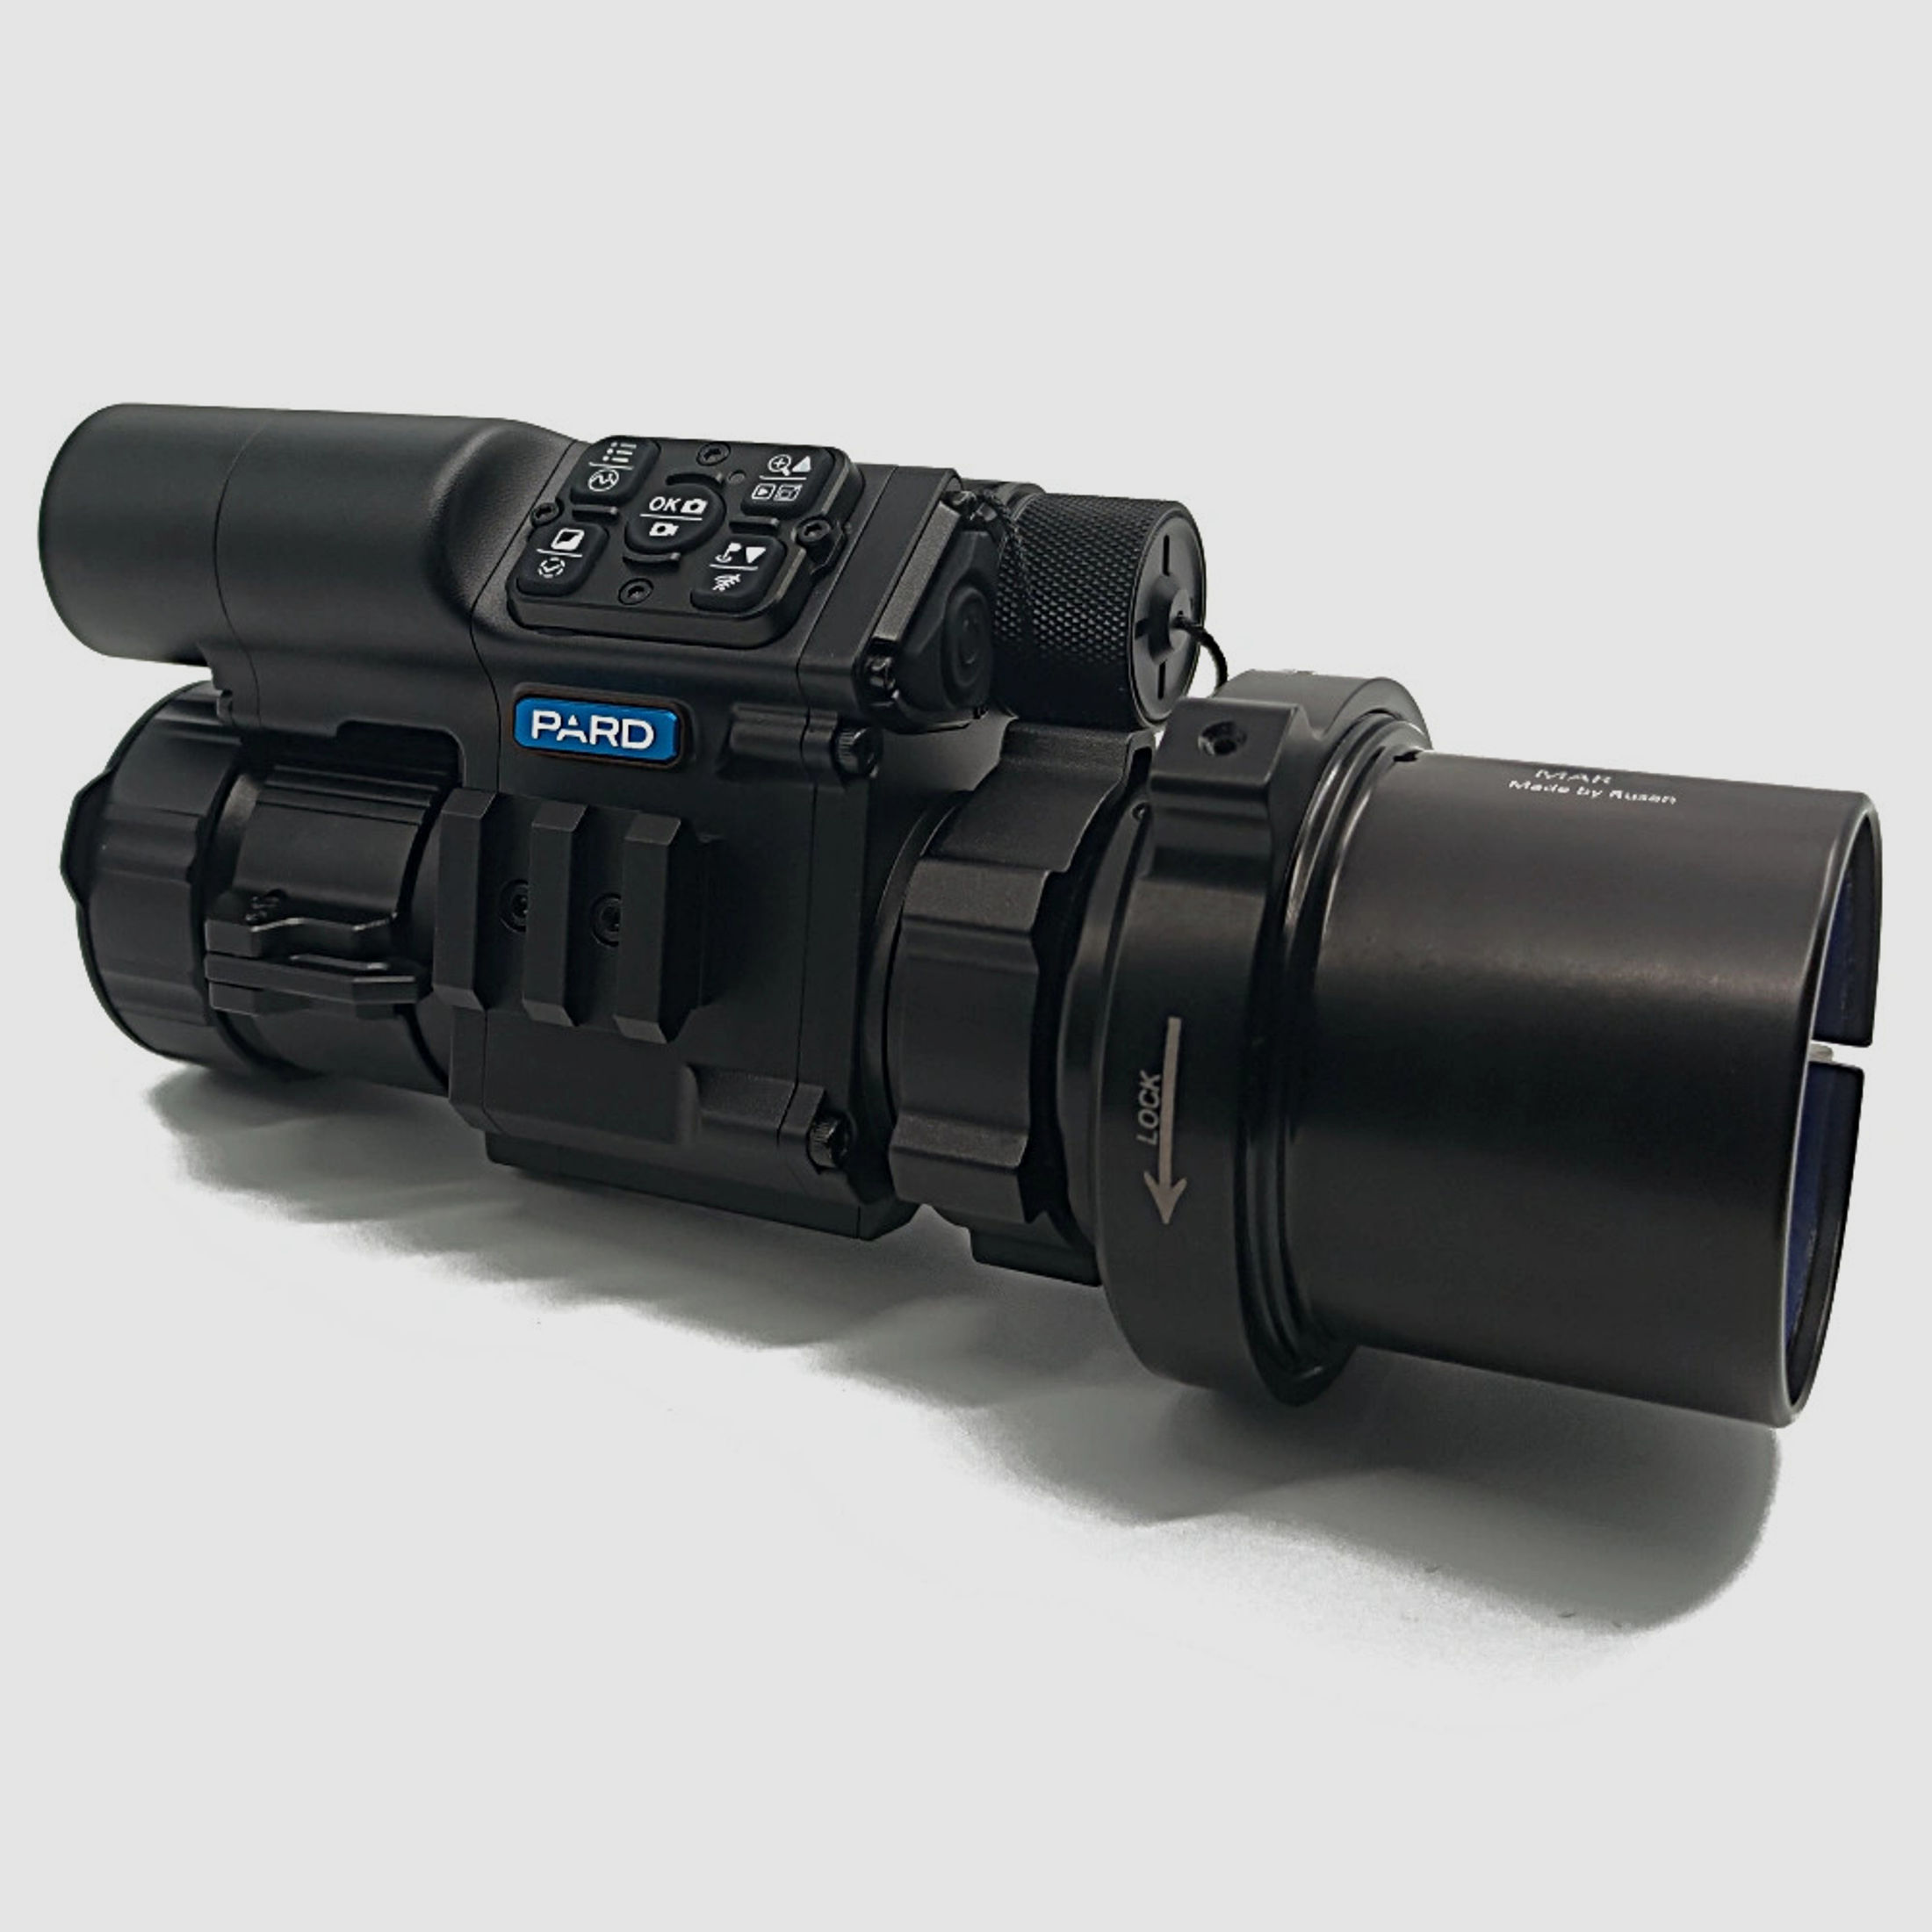 PARD FD1 Nachtsicht 3 in 1 Vorsatz, Monokular & Zielfernrohr - 850 nm mit LRF 65 mm RUSAN MAR + RUSAN MCR